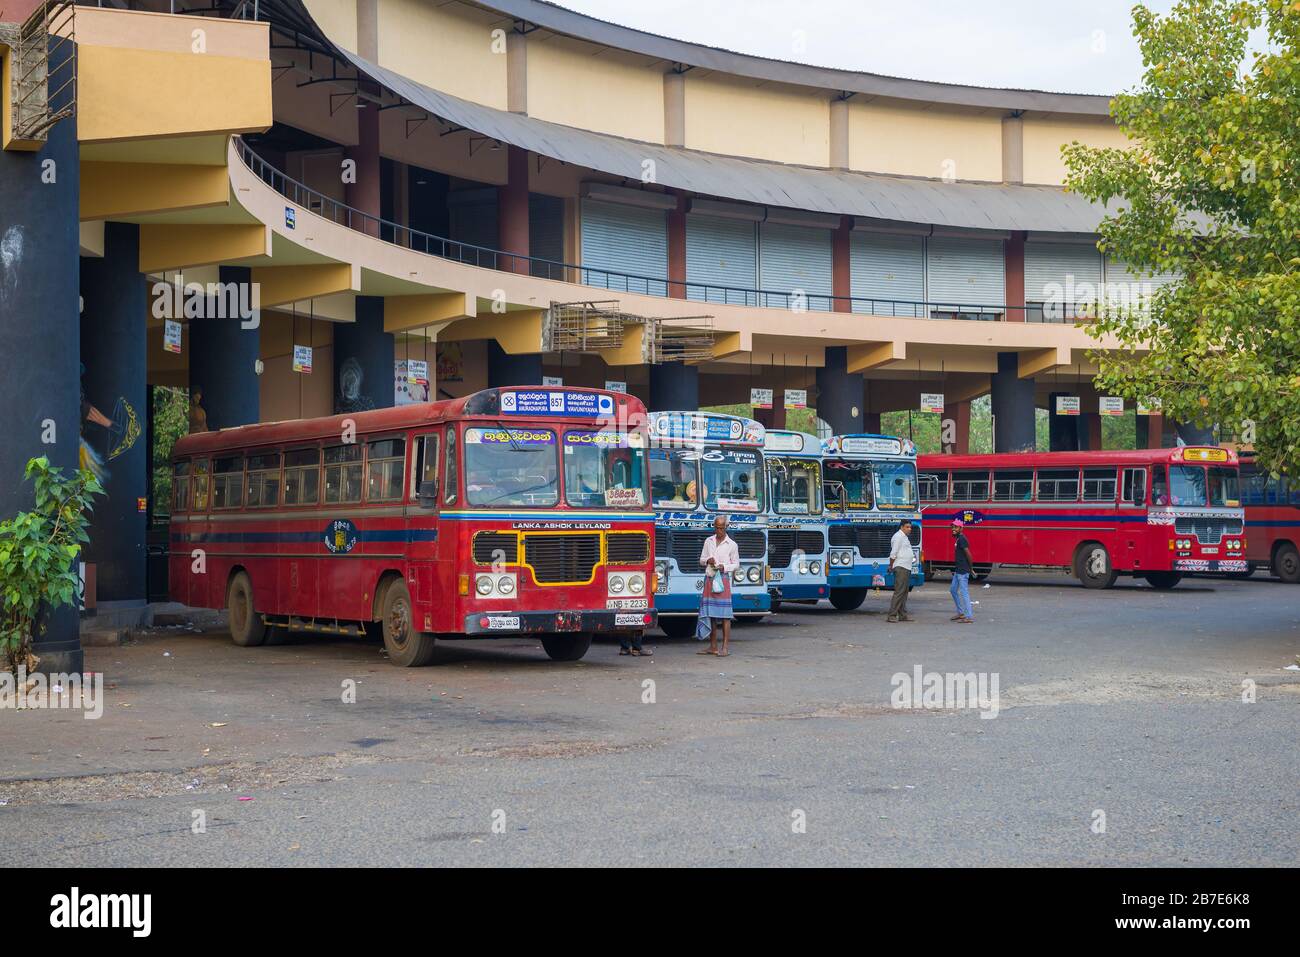 ANURADHAPURA, SRI LANKA - FEBRUARY 07, 2020: At the bus station of Anuradhapura city Stock Photo